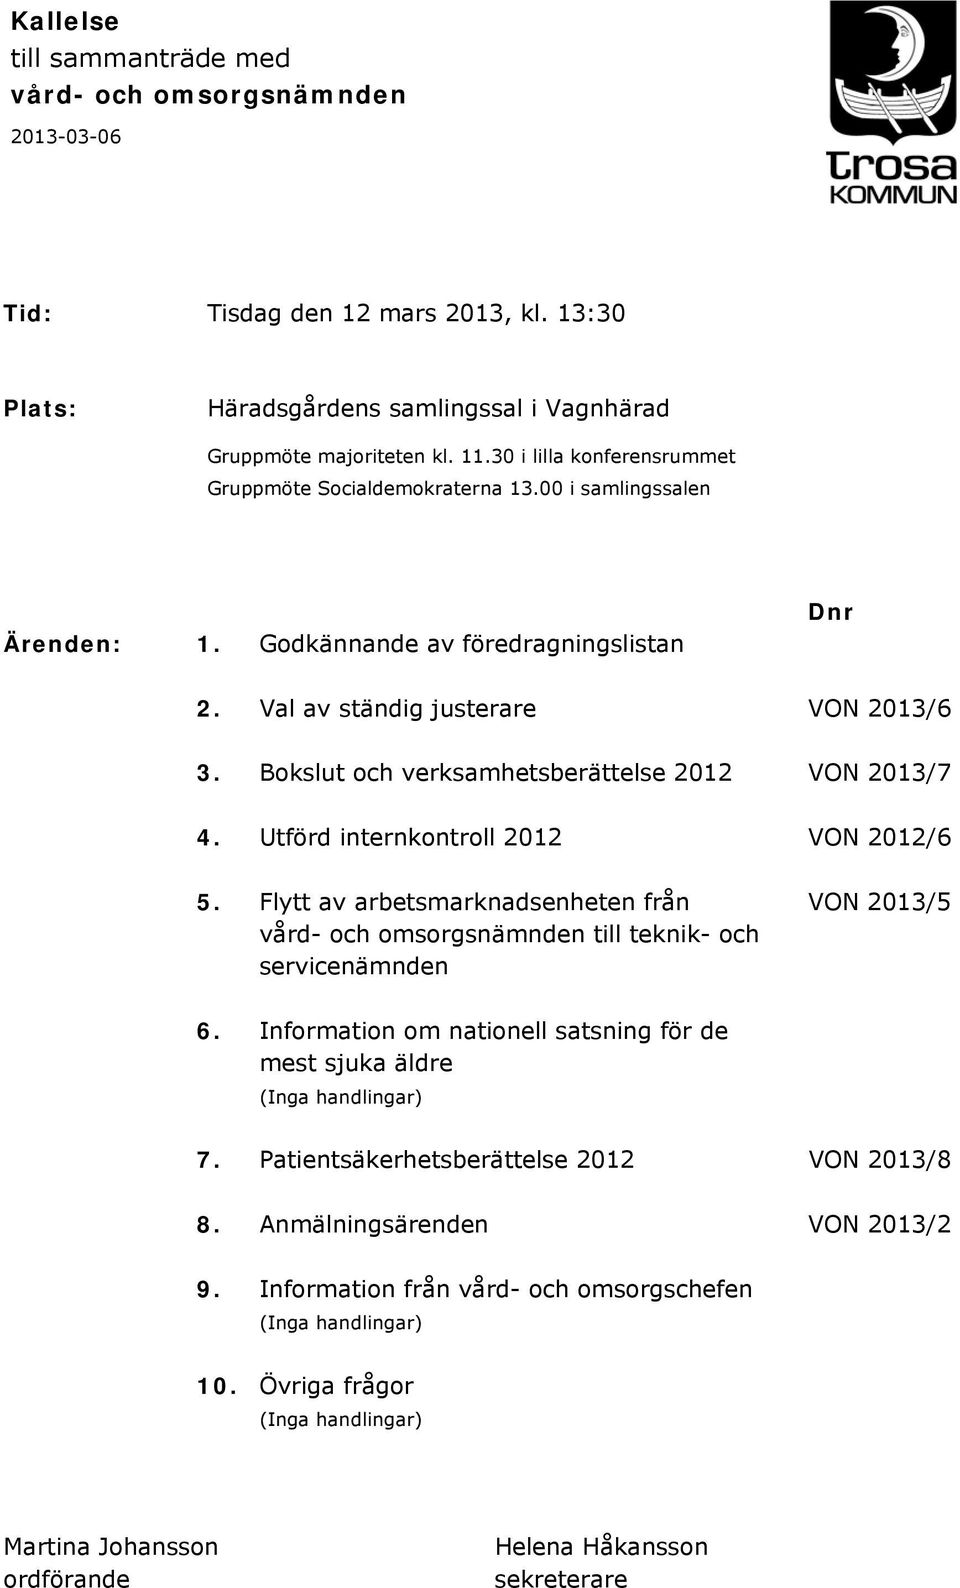 Bokslut och verksamhetsberättelse 2012 VON 2013/7 4. Utförd internkontroll 2012 VON 2012/6 5. Flytt av arbetsmarknadsenheten från VON 2013/5 vård- och omsorgsnämnden till teknik- och servicenämnden 6.